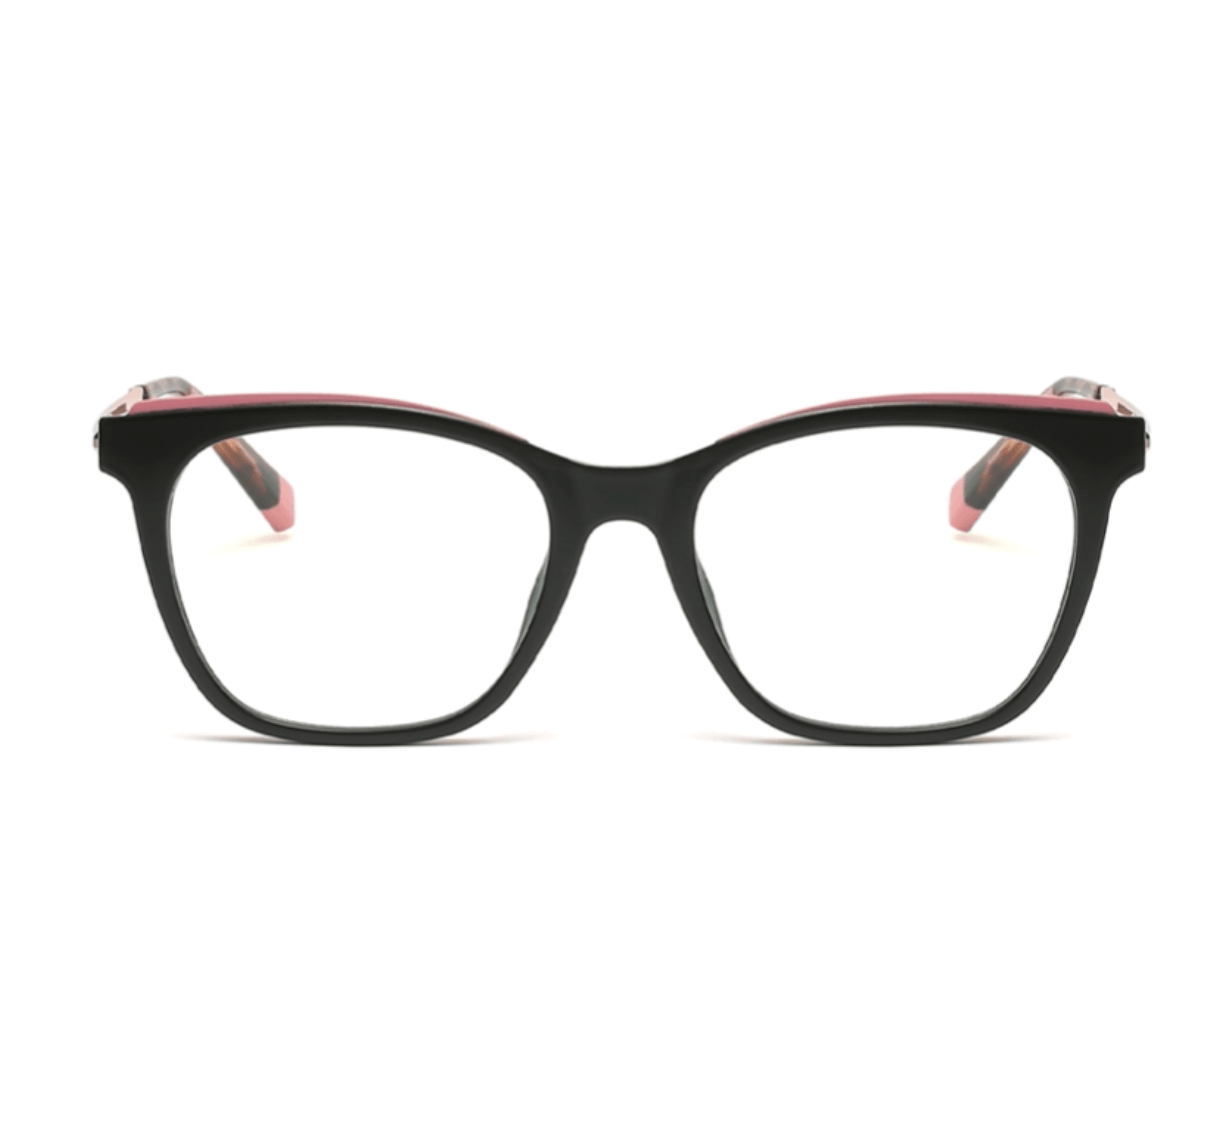 wholesale fashion glasses bulk plastic eyeglasses, wholesale eyeglasses, wholesale eyewear China, eyeglass makers